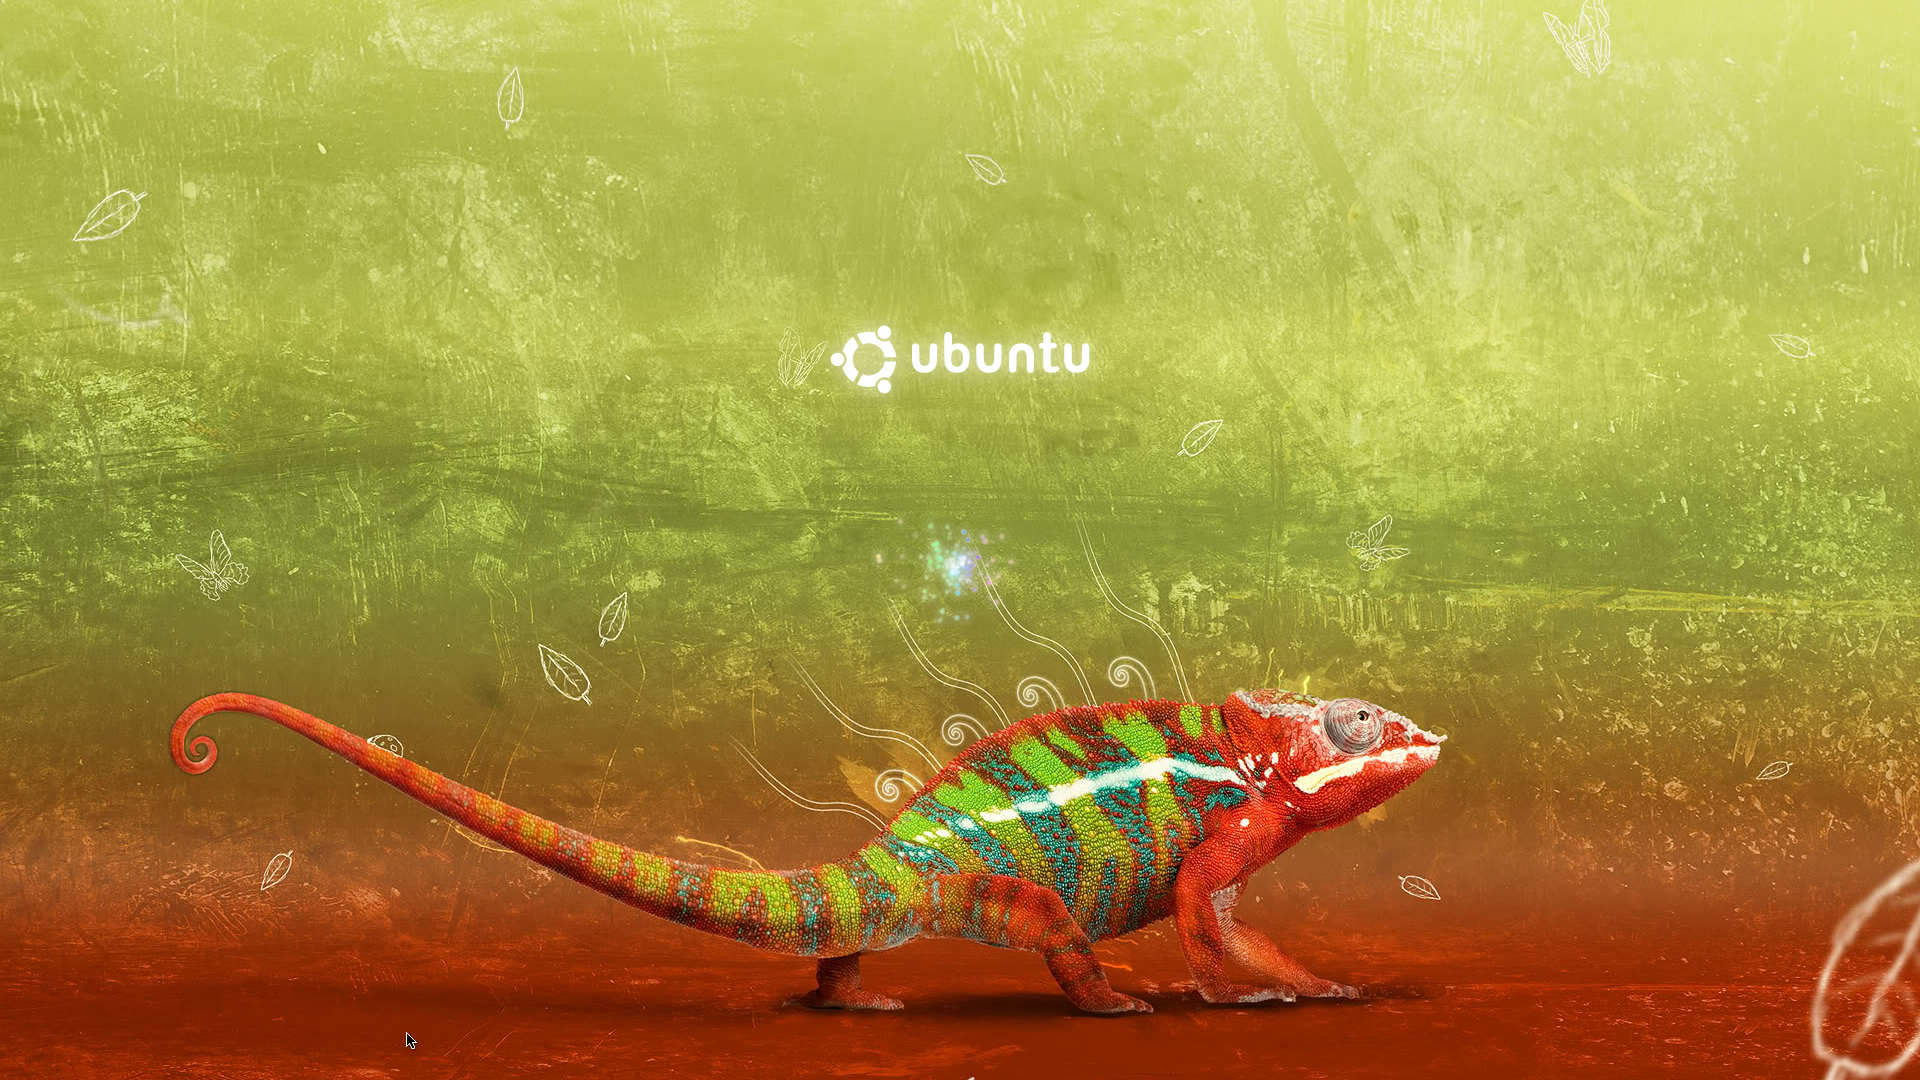 Desktop, theme, ubuntu